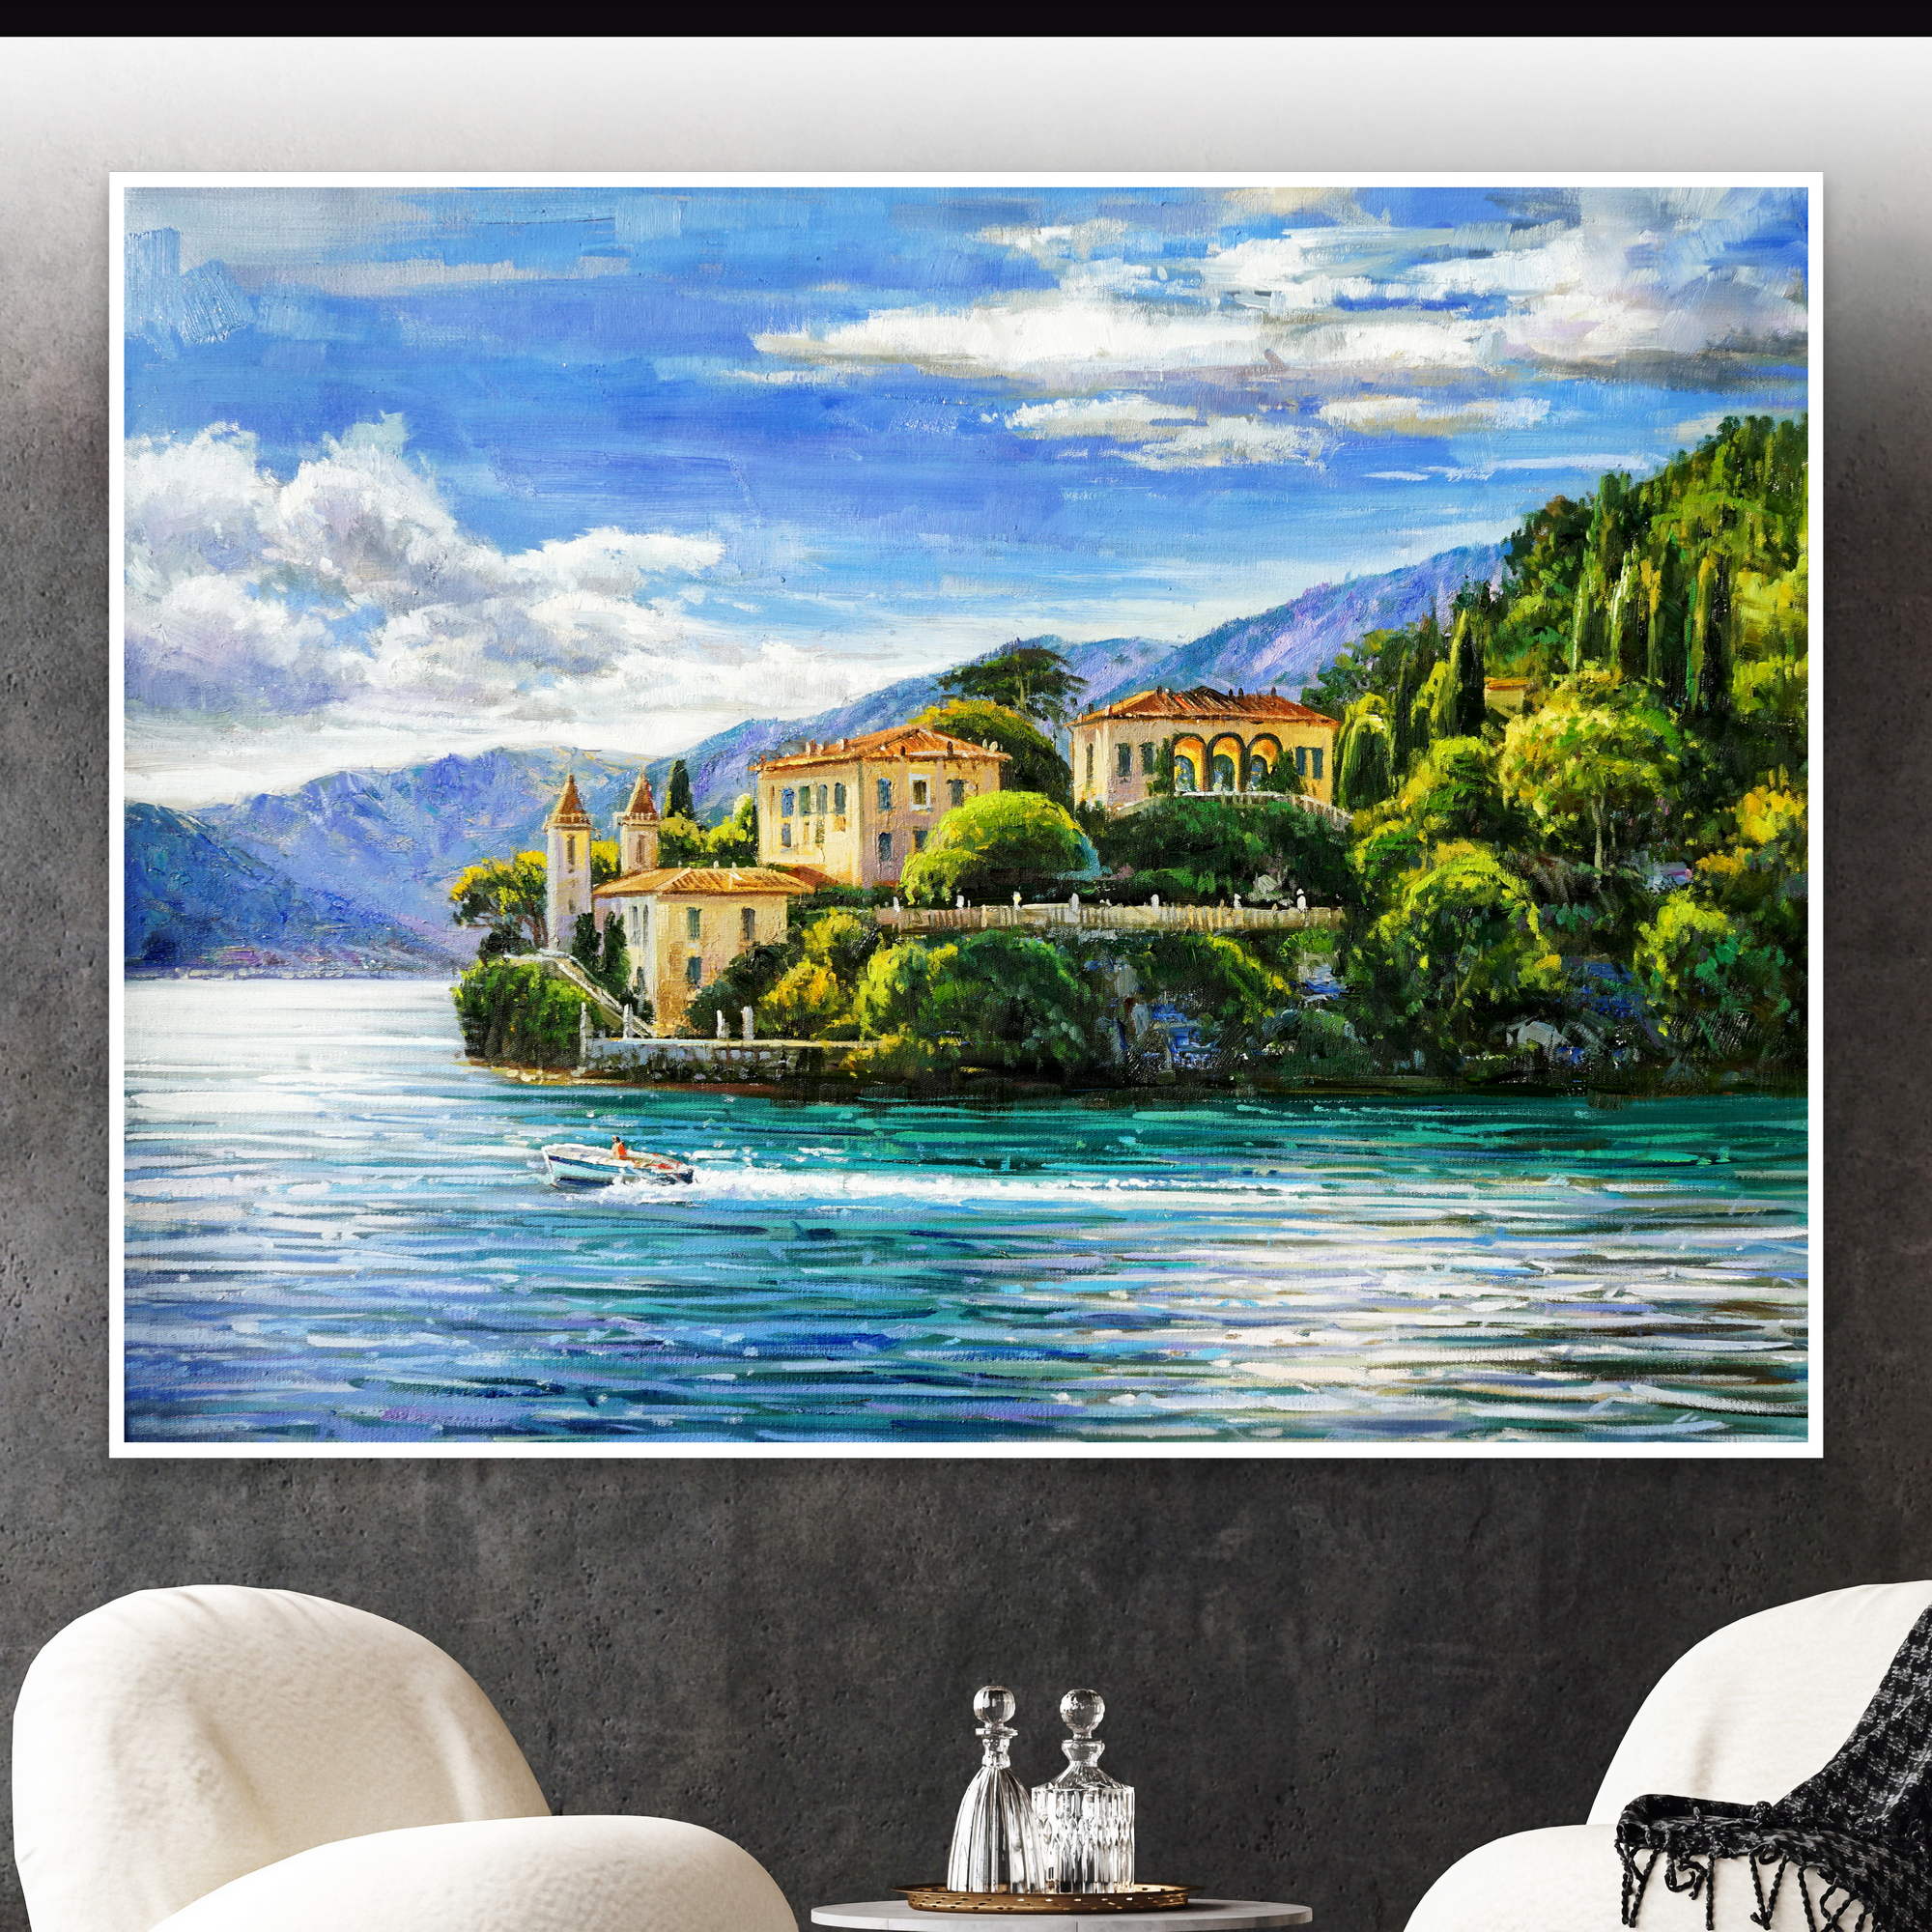 Dipinto della famosa Villa del Balbianello sul lago di Como